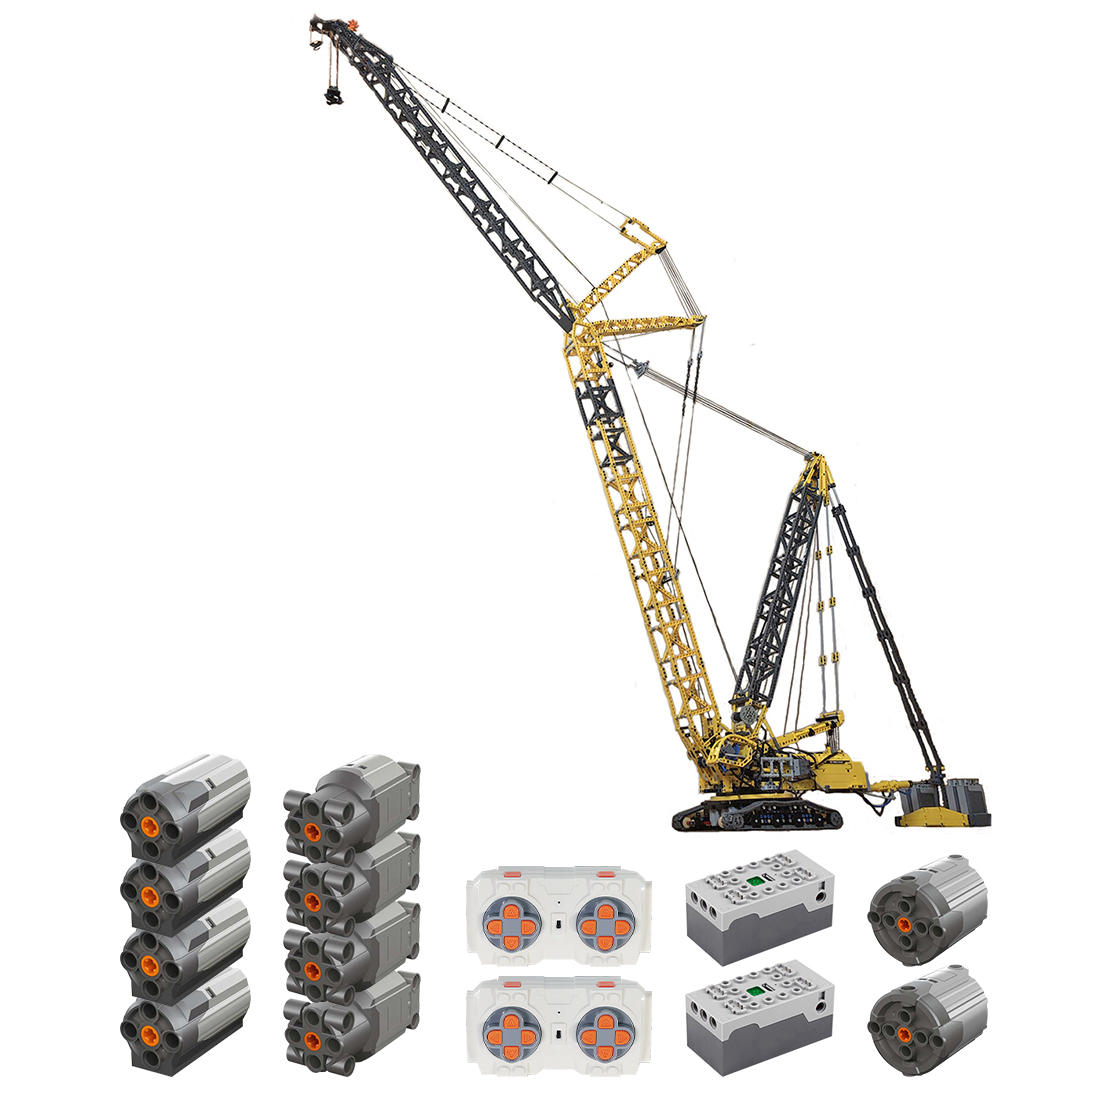 3927Pcs Crane Bricks Building Block Set With 10 Motors